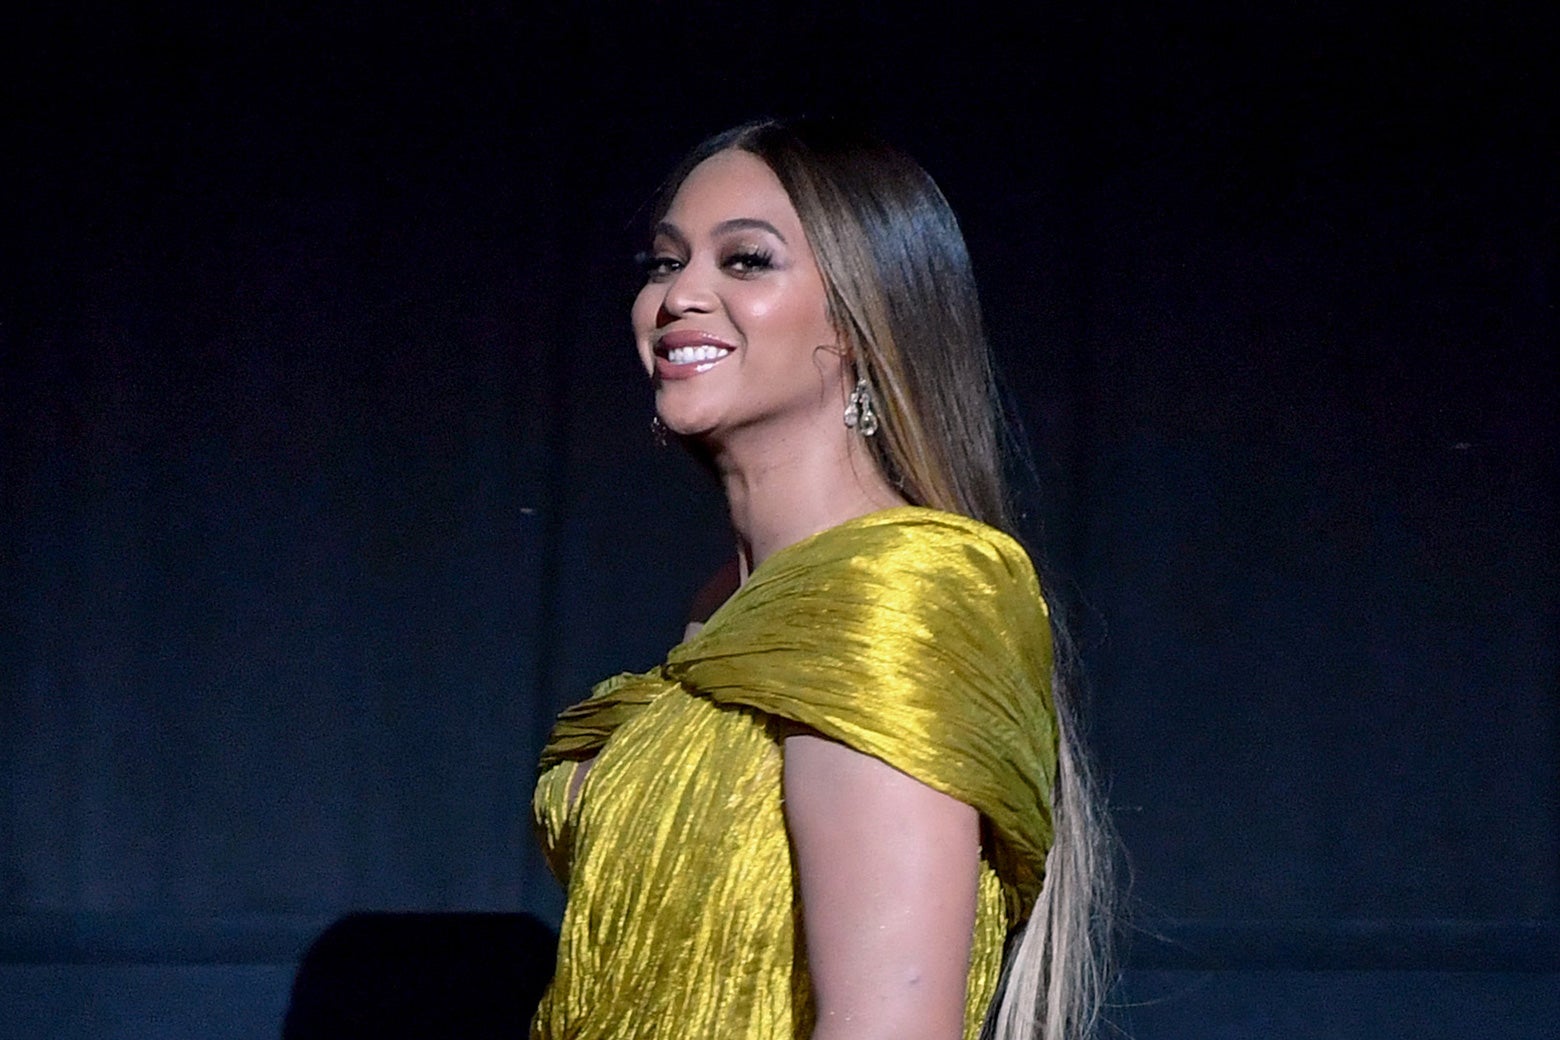 Beyoncé smiling in a gold dress.